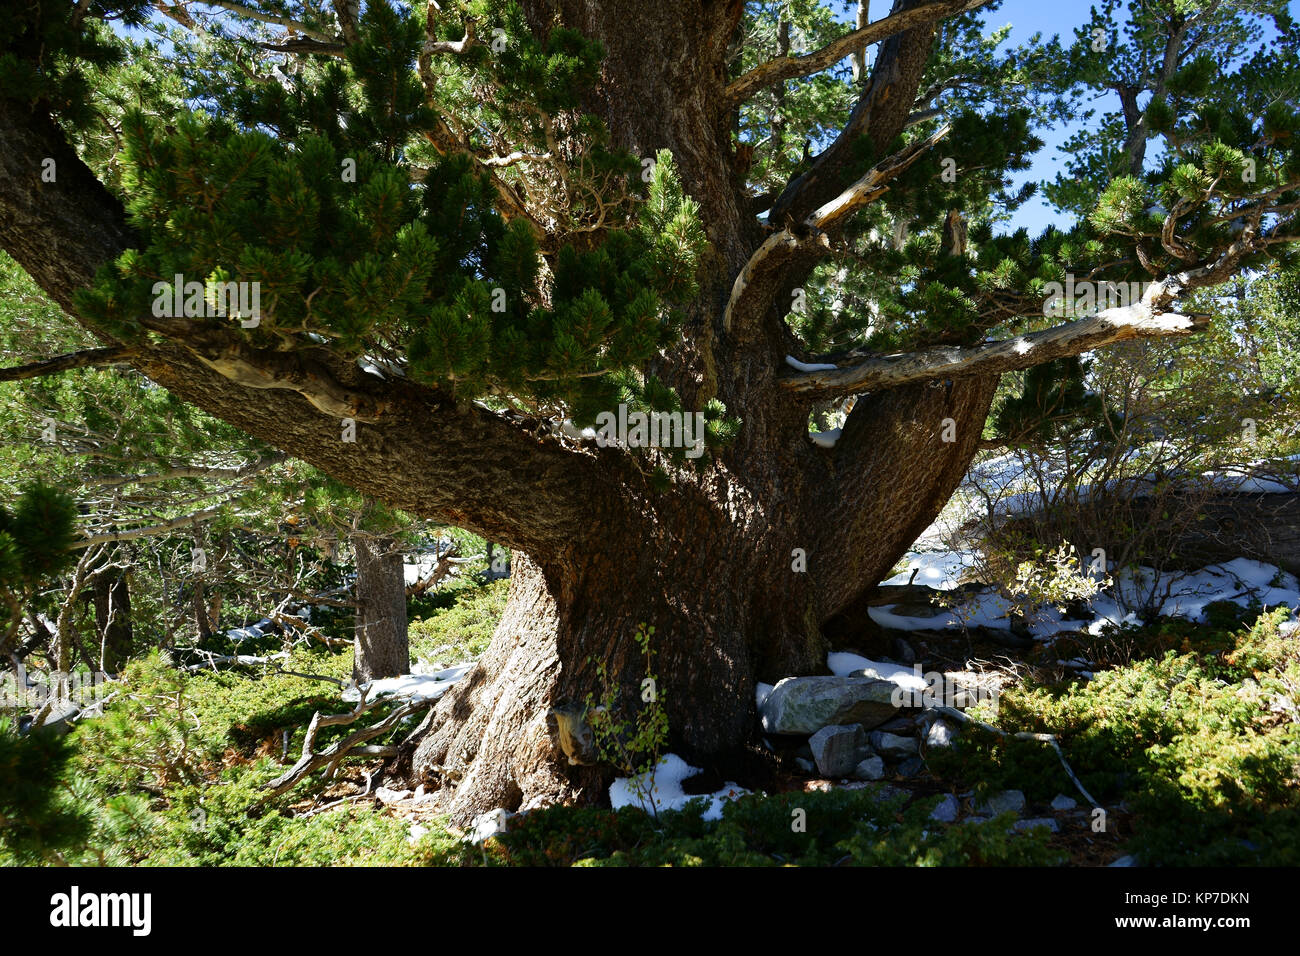 Bristlecone Pine Tree, Parco nazionale Great Basin, Nevada, STATI UNITI D'AMERICA Foto Stock